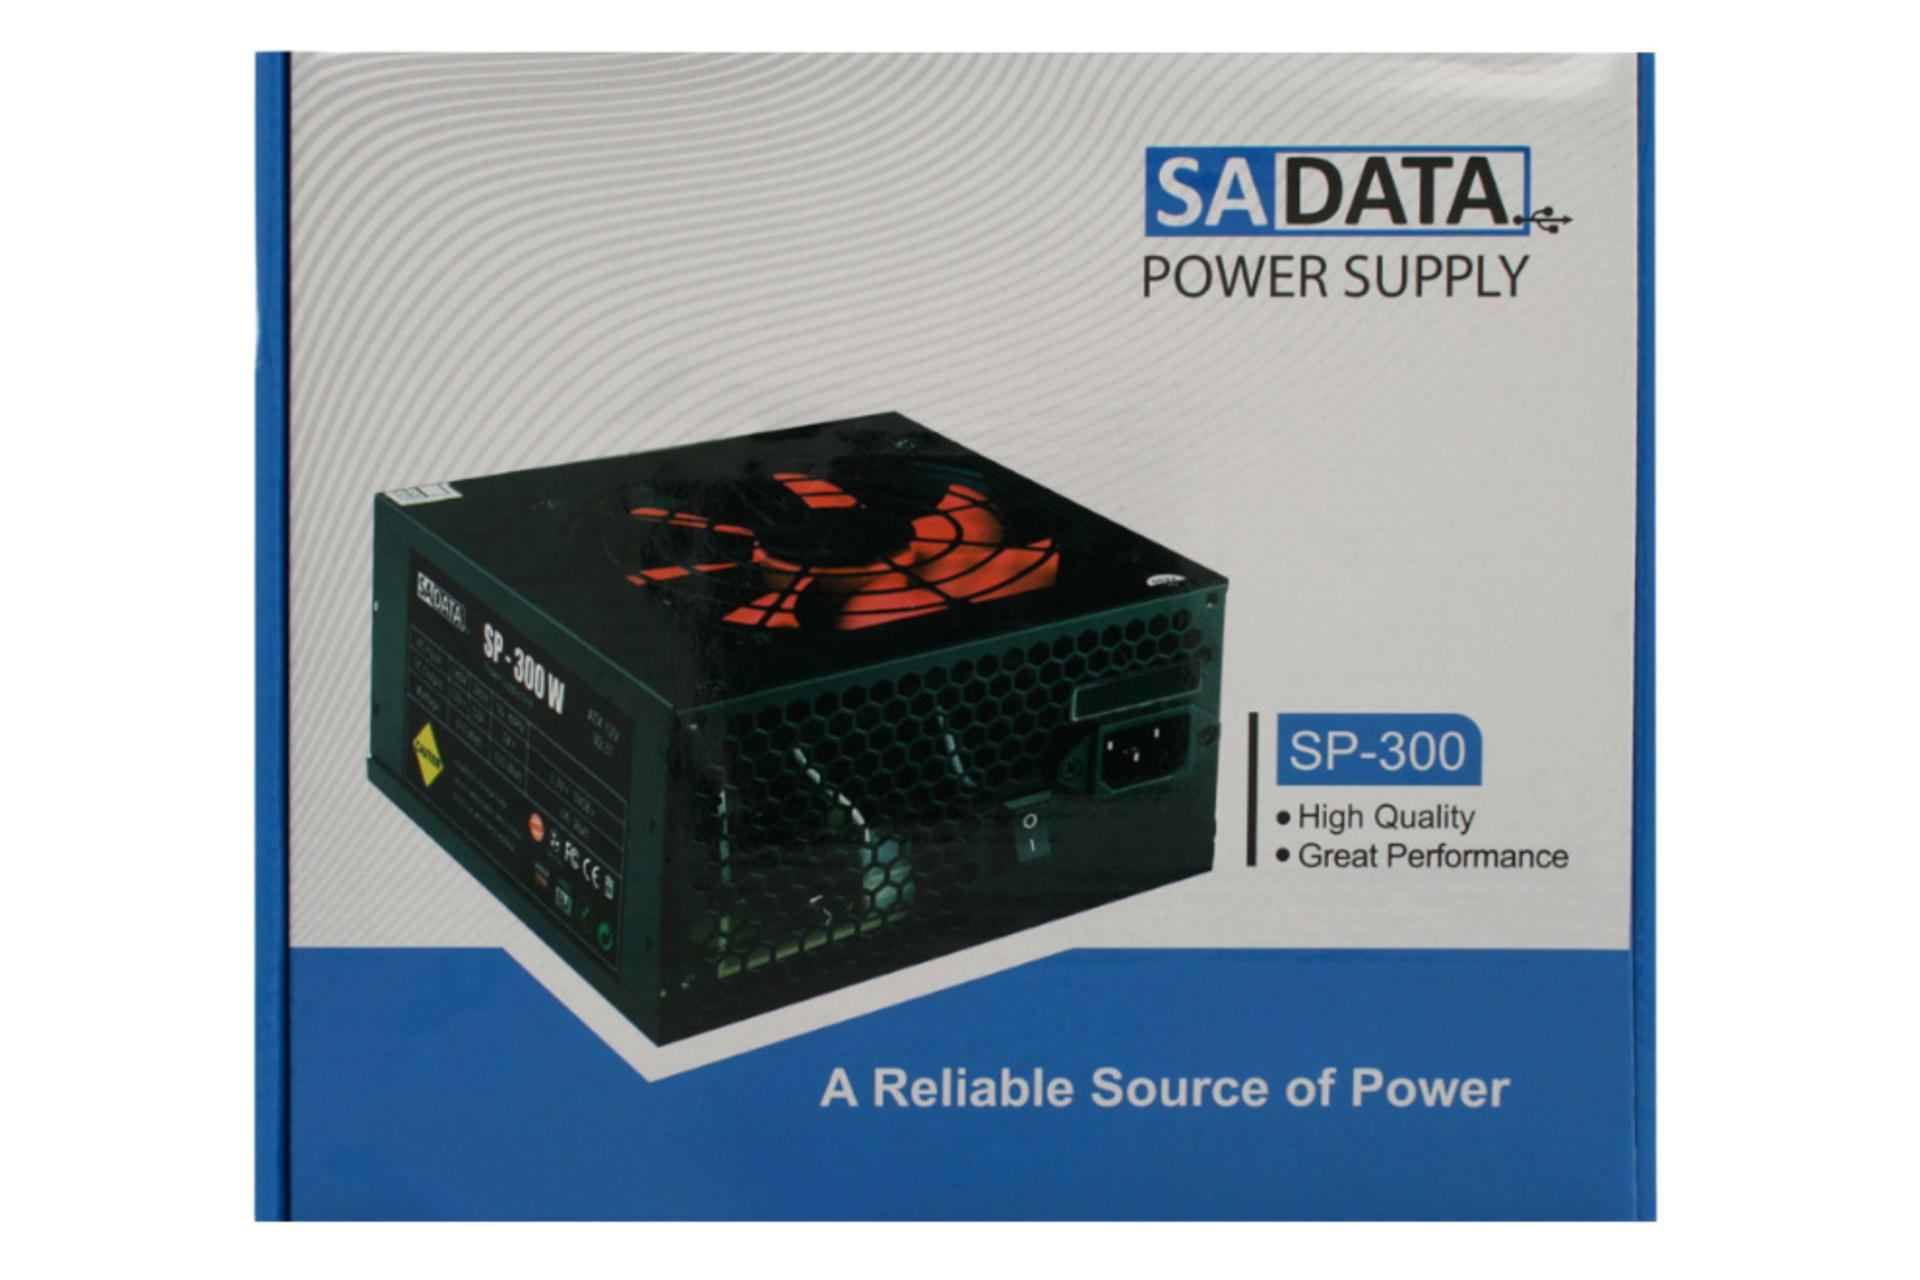 جعبه پاور کامپیوتر سادیتا SP-300 با توان 300 وات / SADATA SP-300 300W